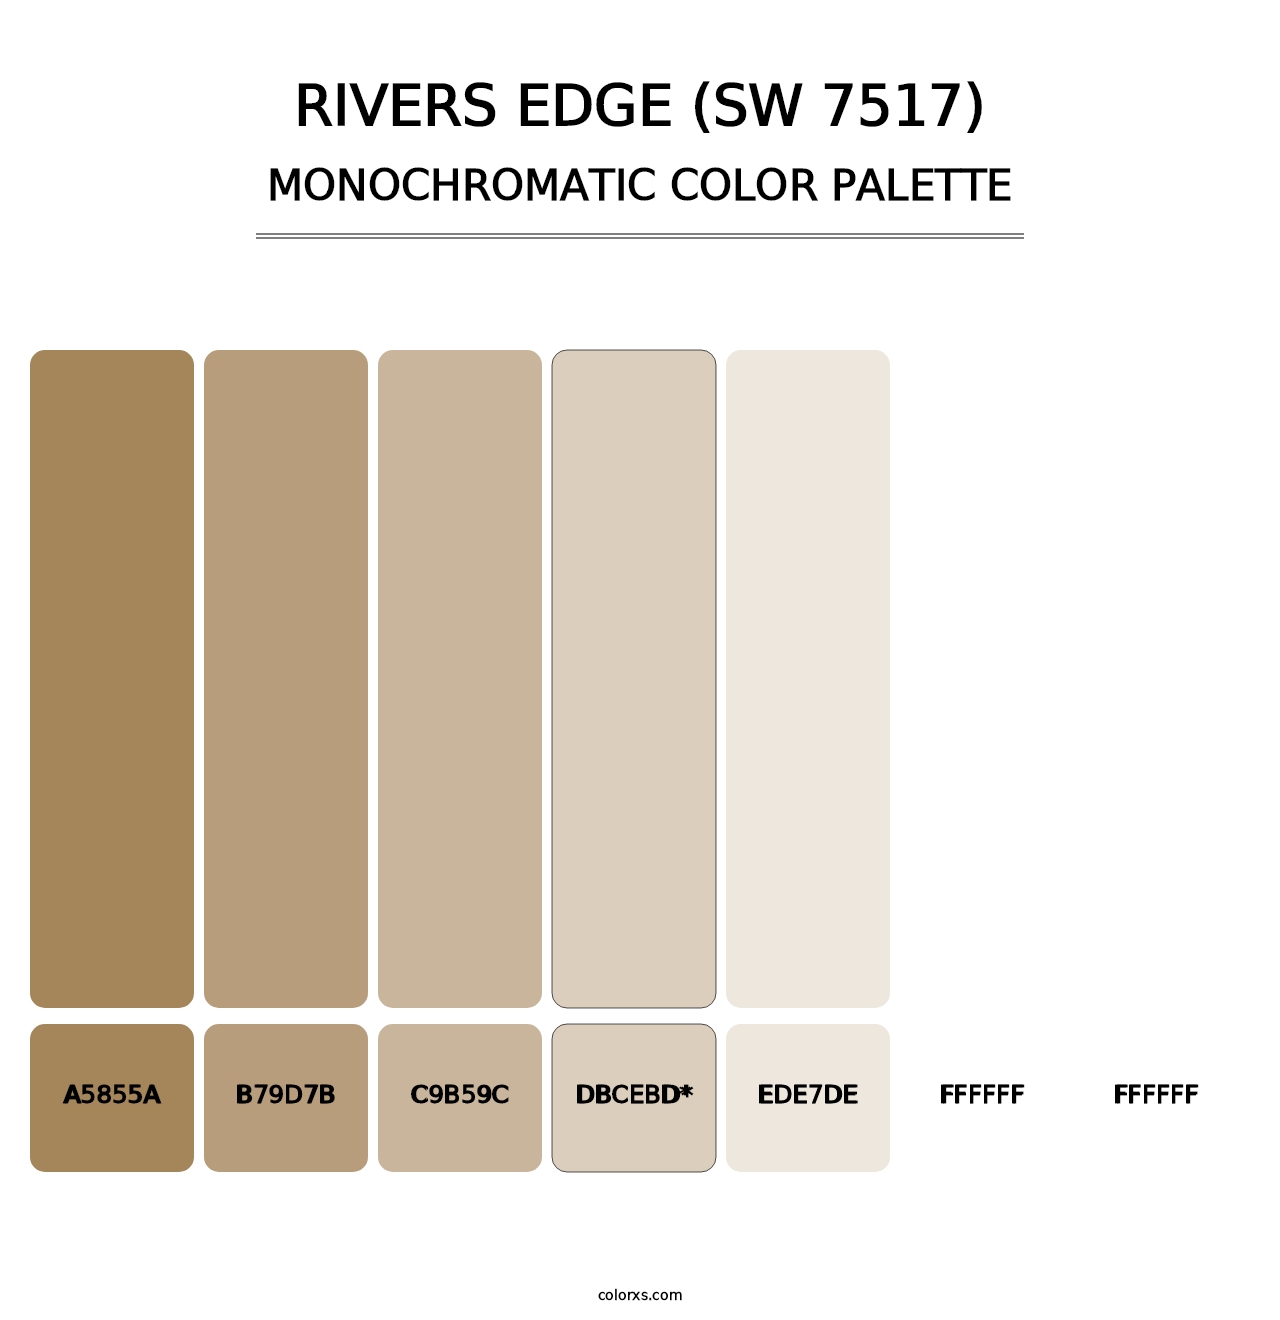 Rivers Edge (SW 7517) - Monochromatic Color Palette